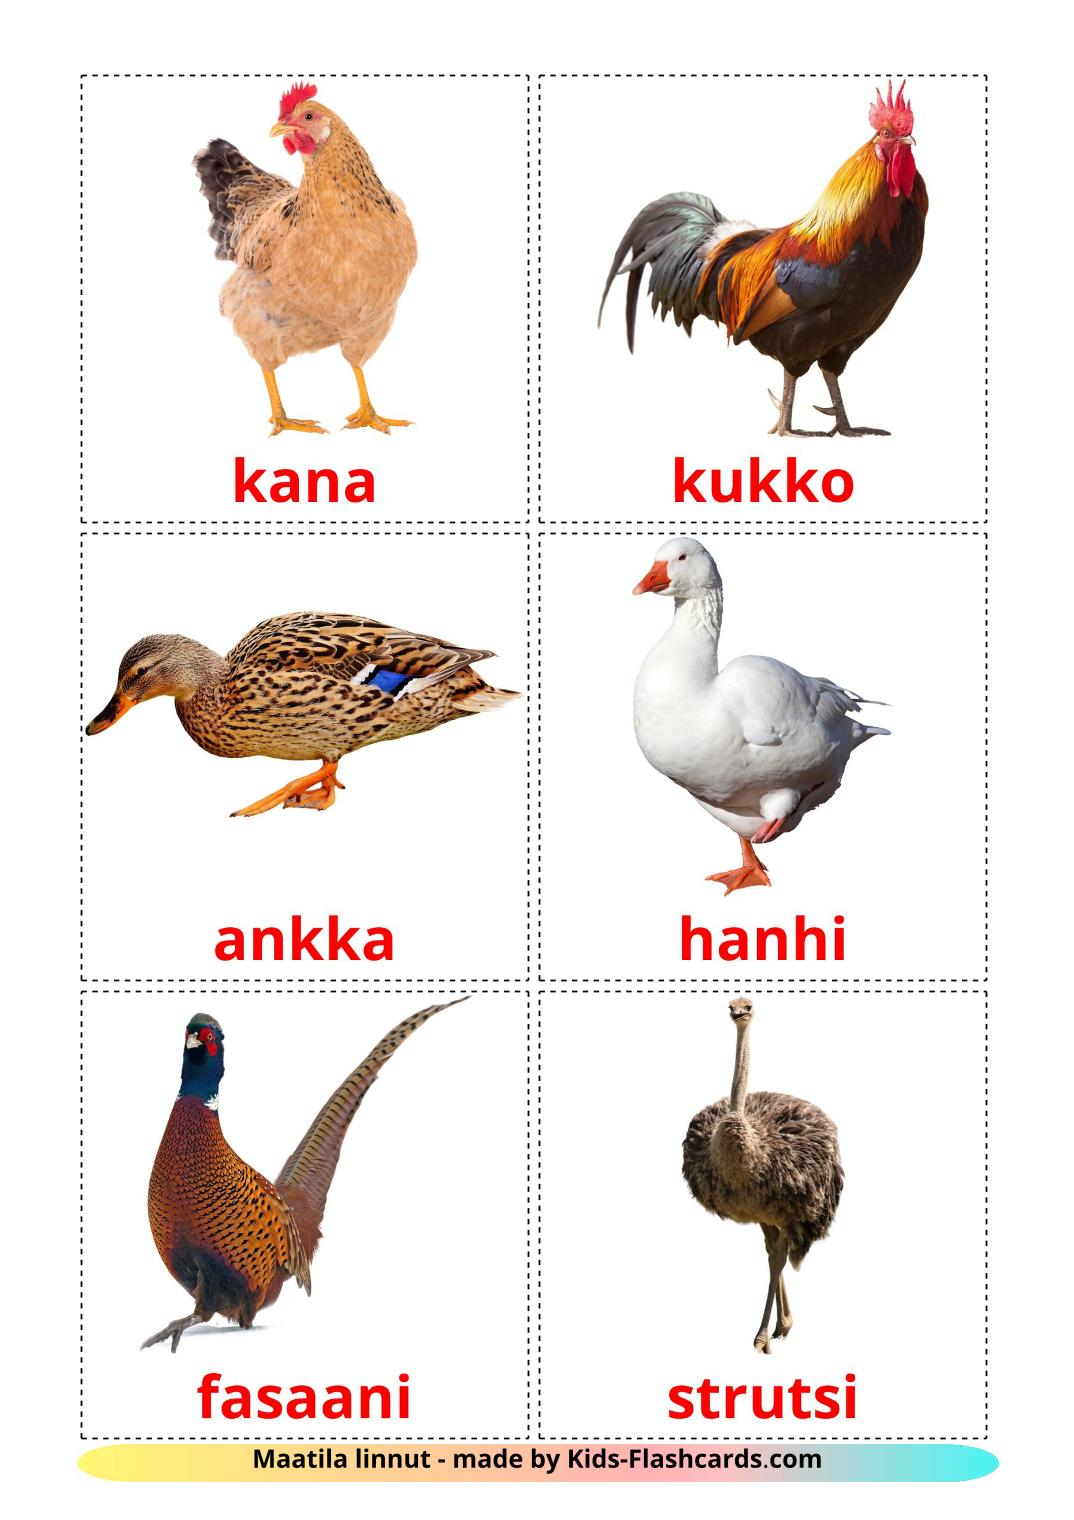 Aves da Quinta - 11 Flashcards finlandêses gratuitos para impressão